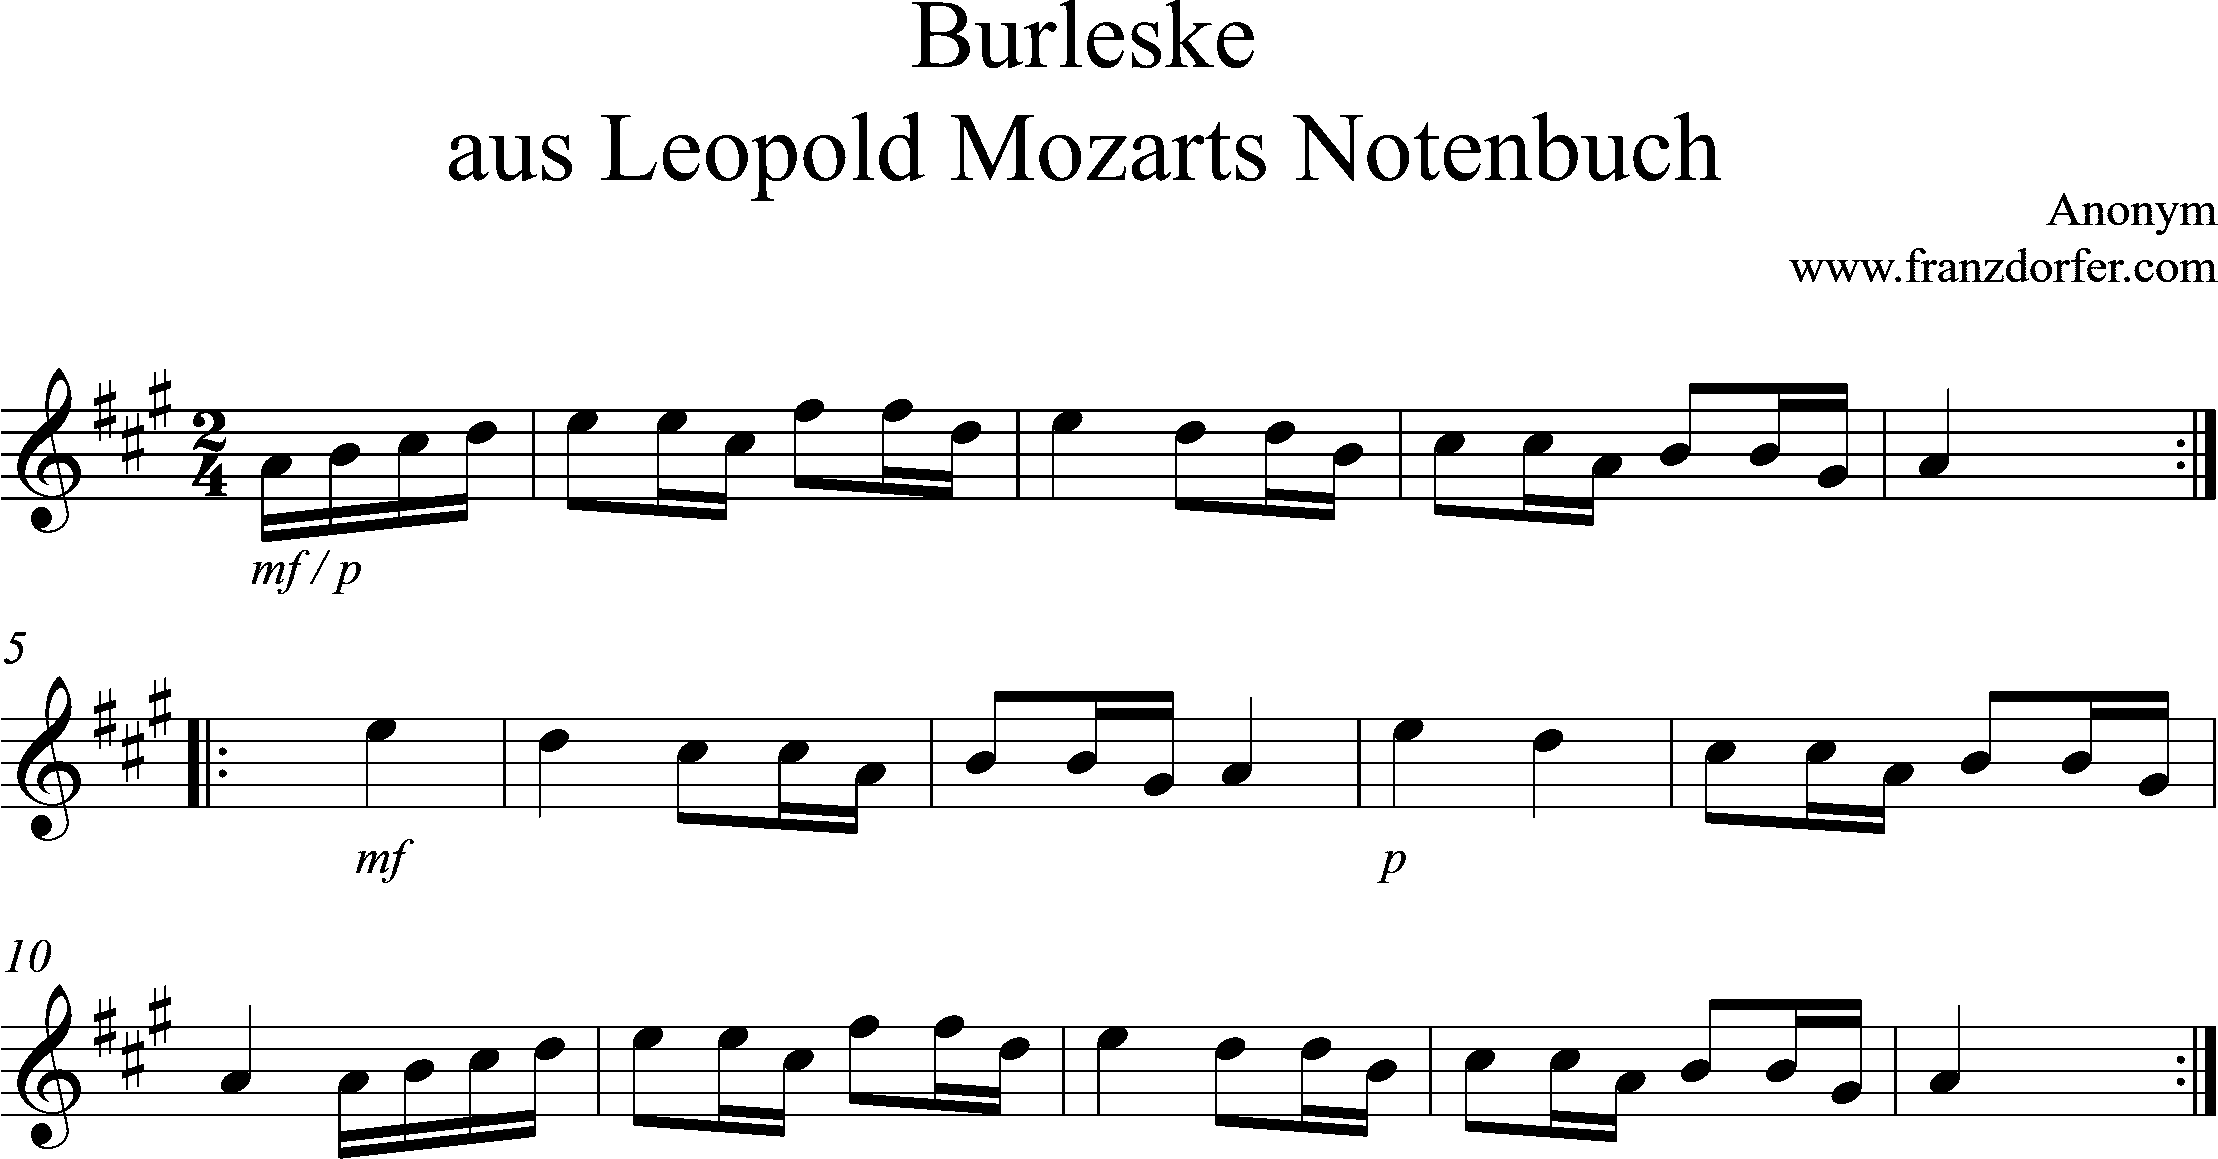 Noten, Solostimme, Burleske, A-Dur